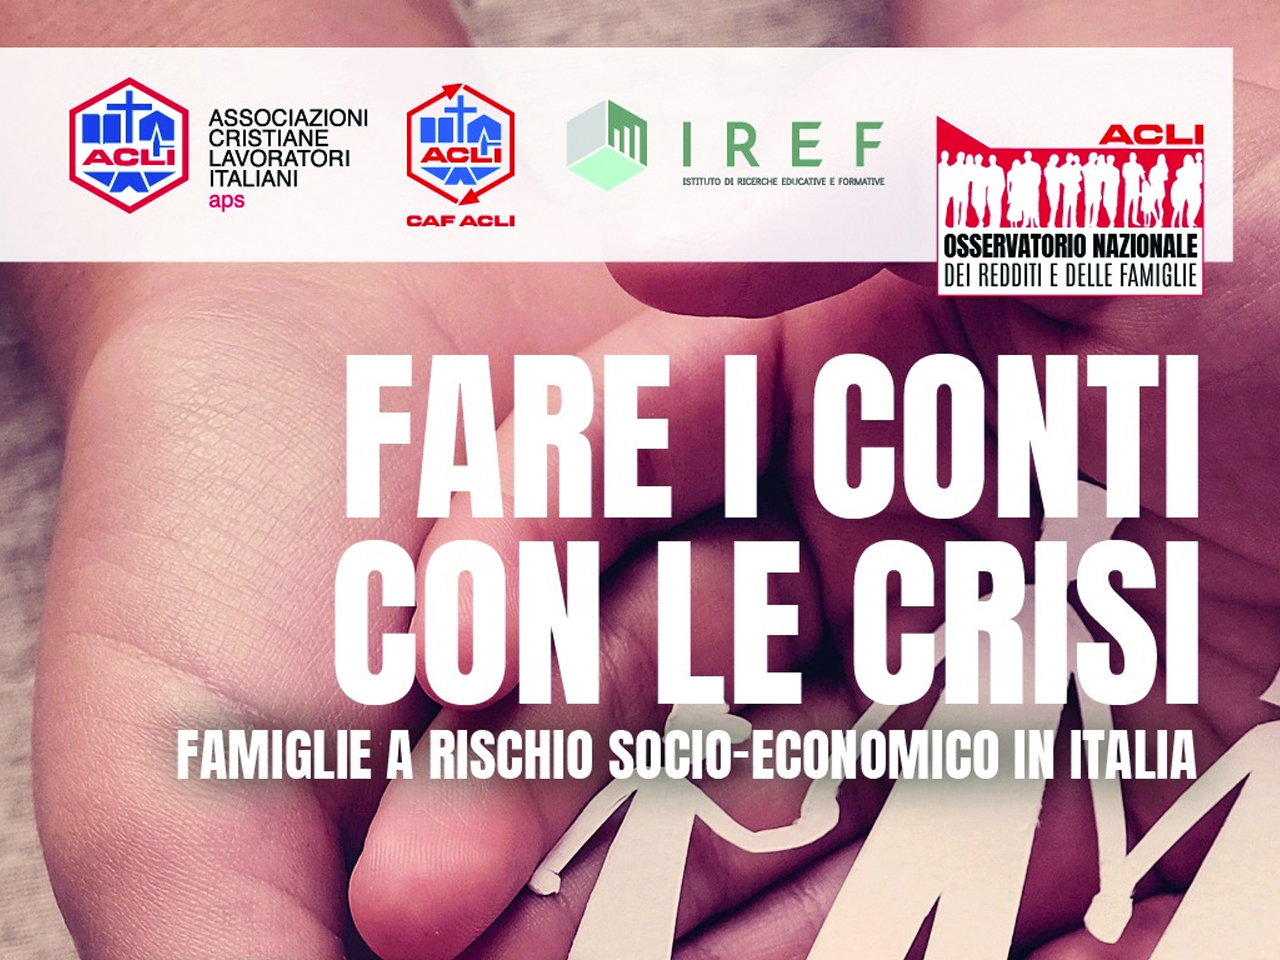 Fare i conti con le crisi: famiglie a rischio socio-economico in Italia